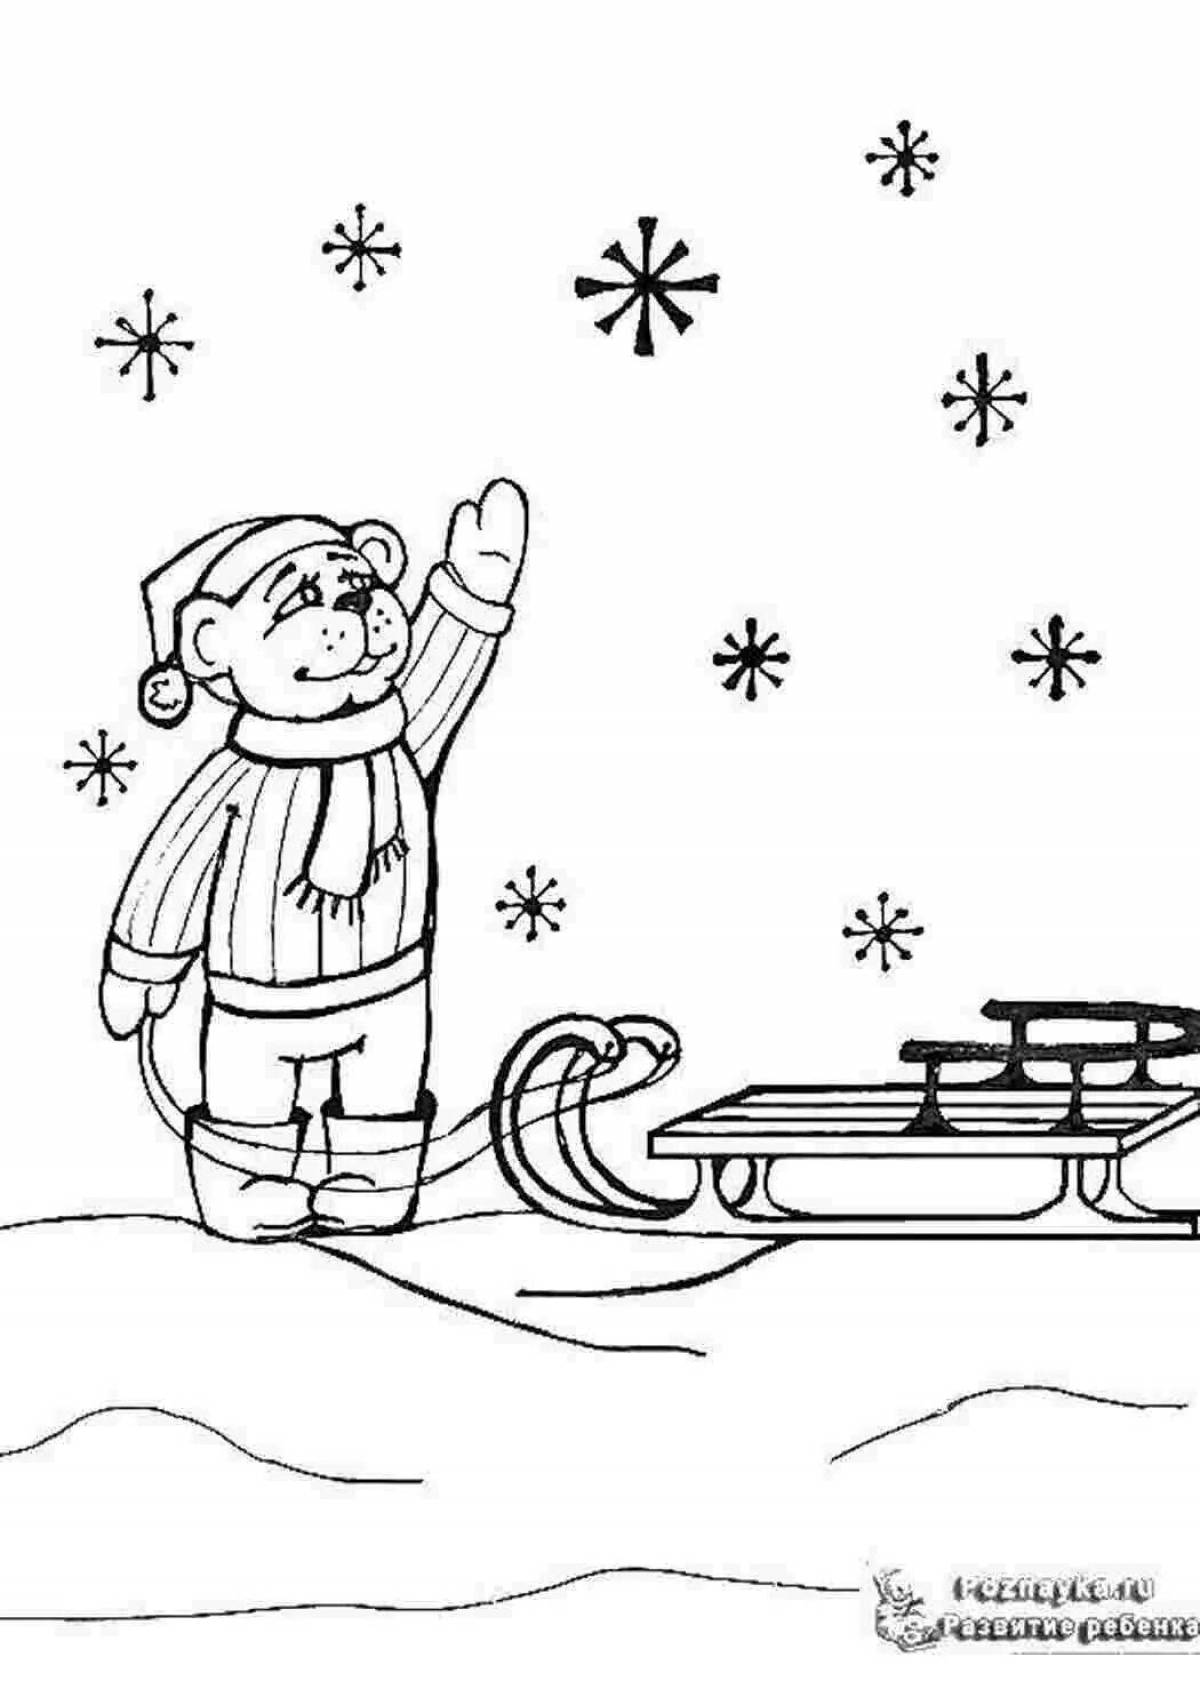 Раскрасим снег. Снег раскраска для детей. Снегопад раскраска для детей. Зимние раскраски для детей. Снежки раскраска для детей.